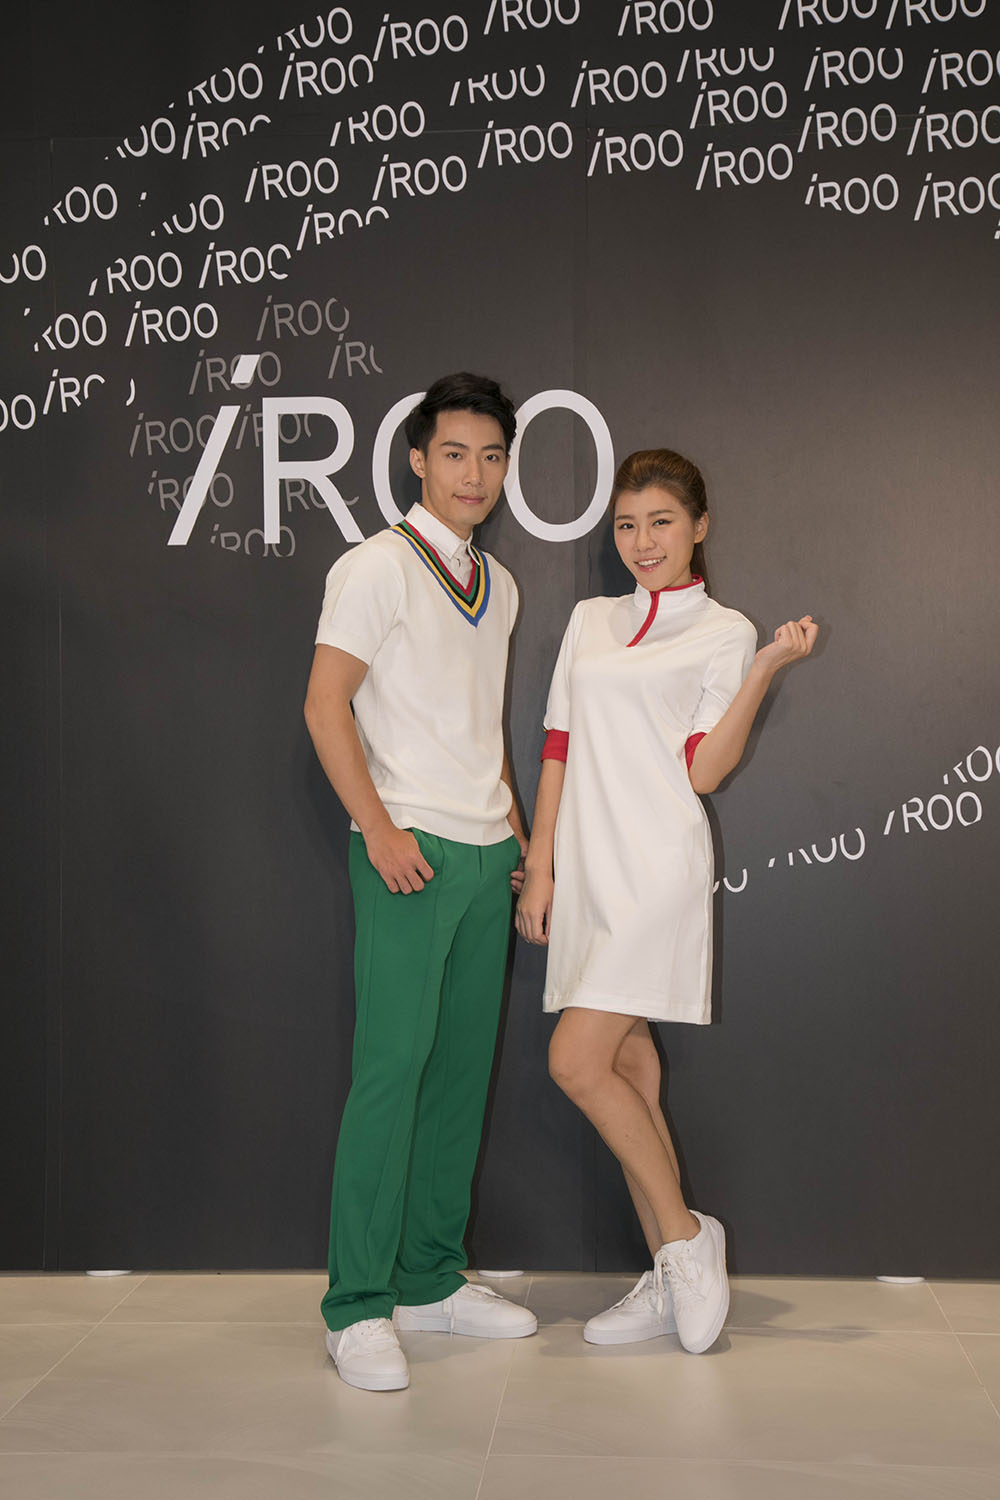 台灣服裝品牌iRoo打造世大運儀典人員服裝賽事禮儀人員.JPG